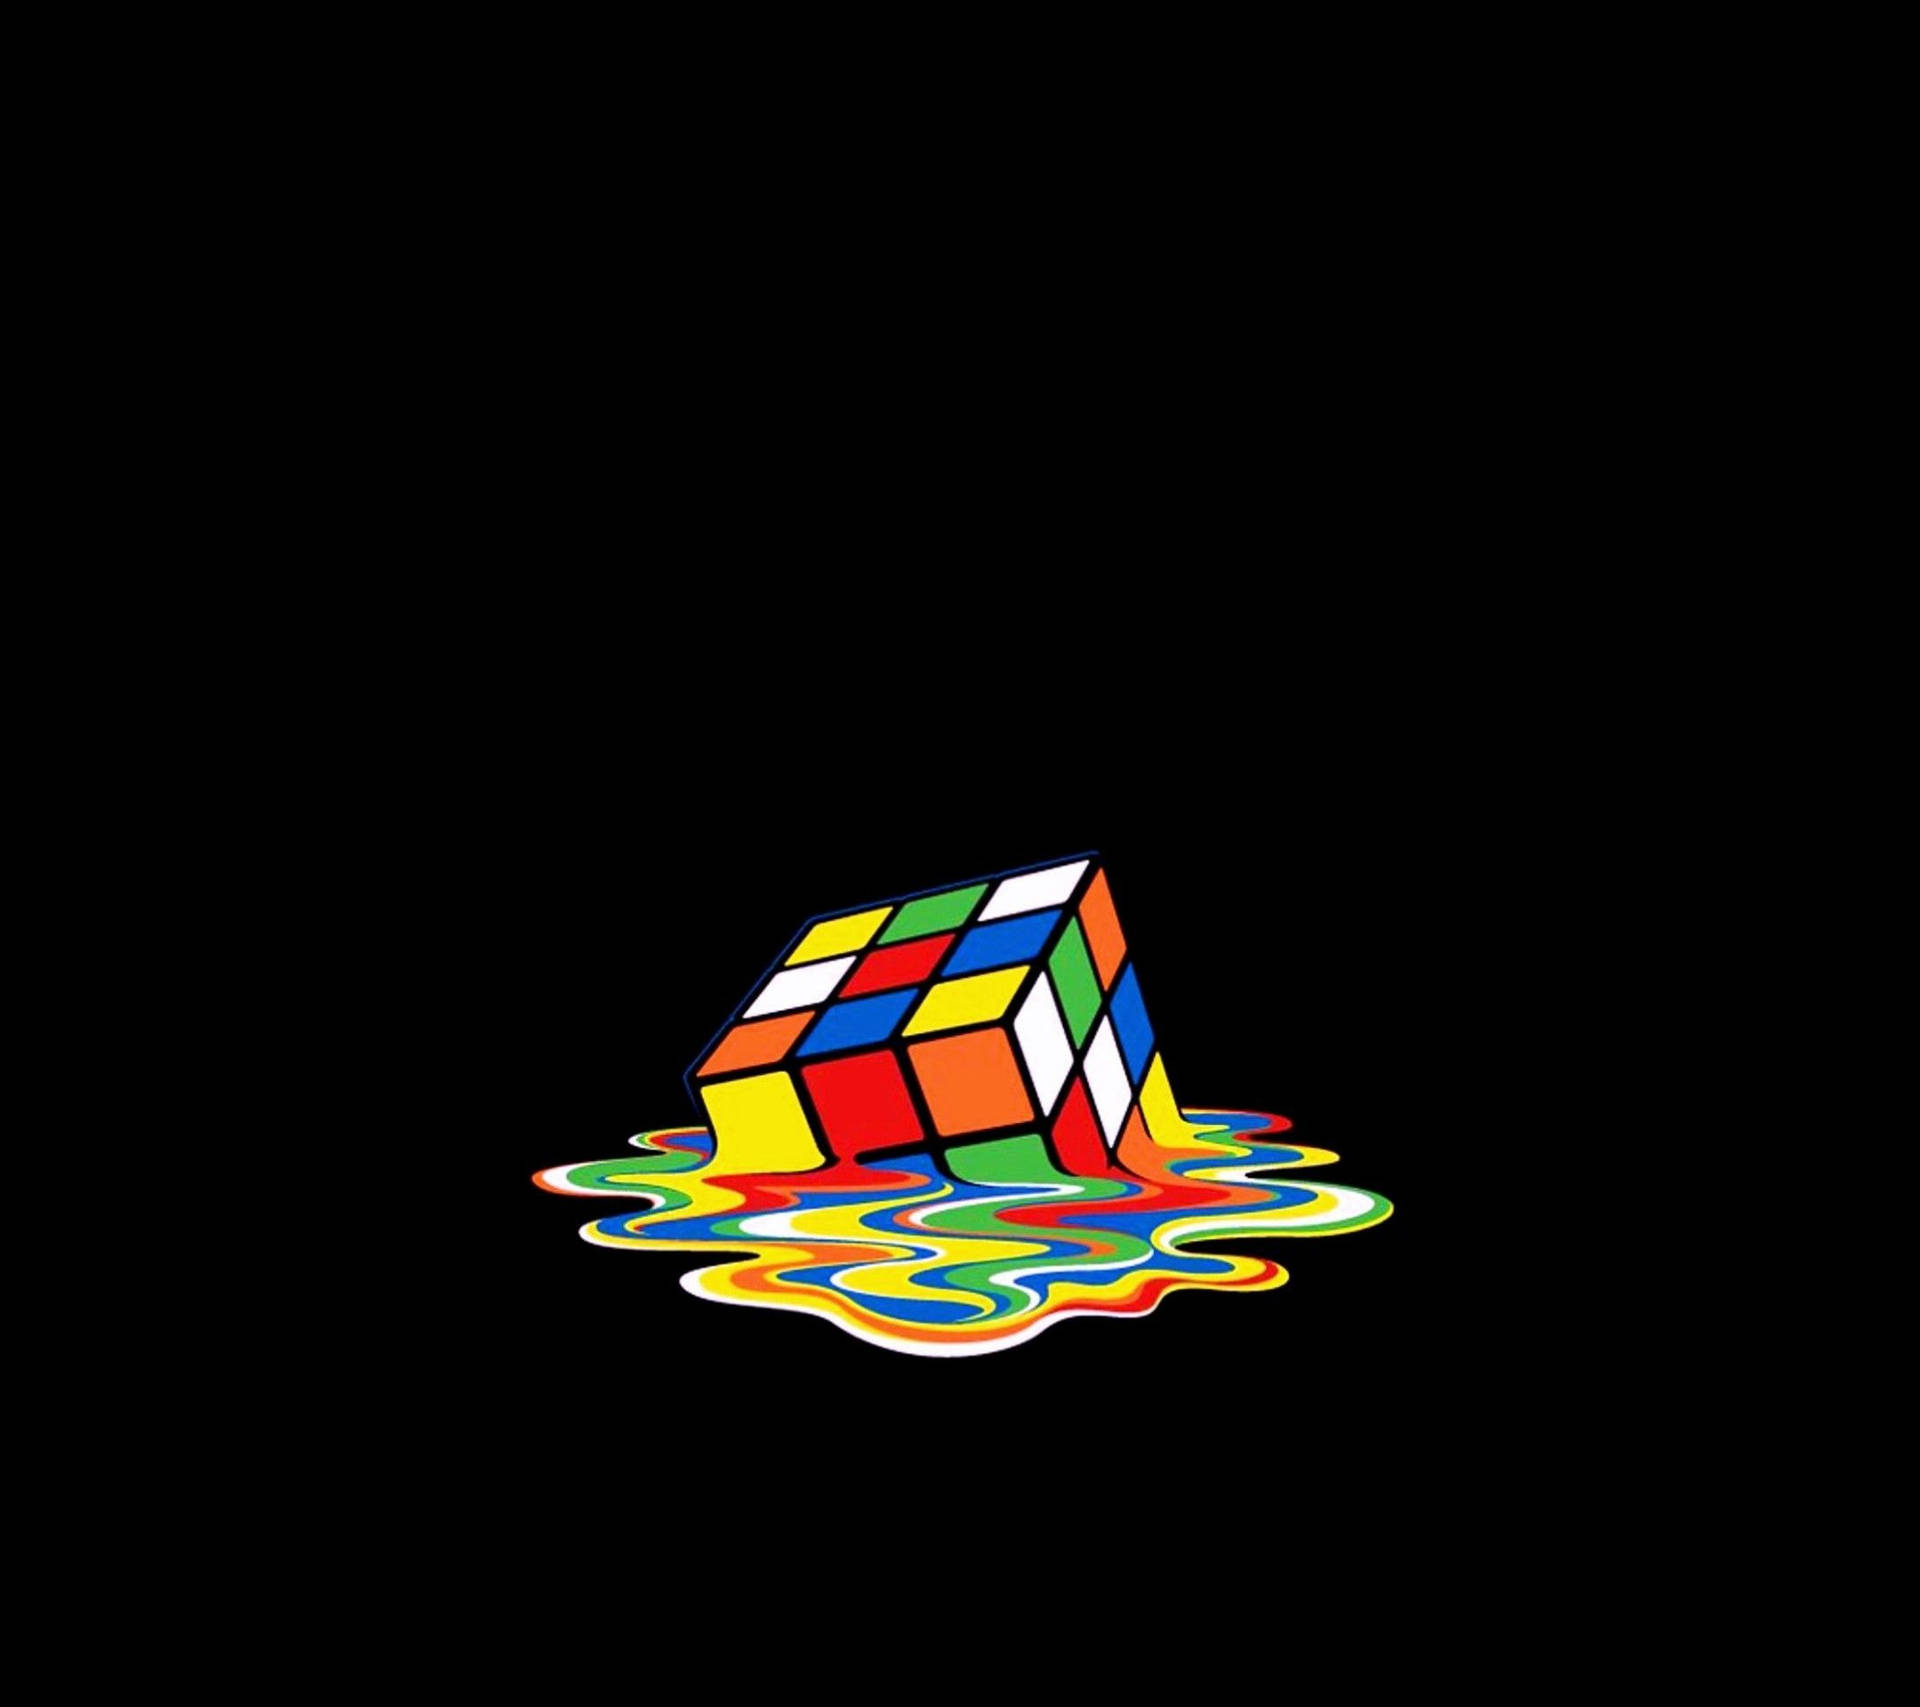 Melted Rubiks Amoled Background